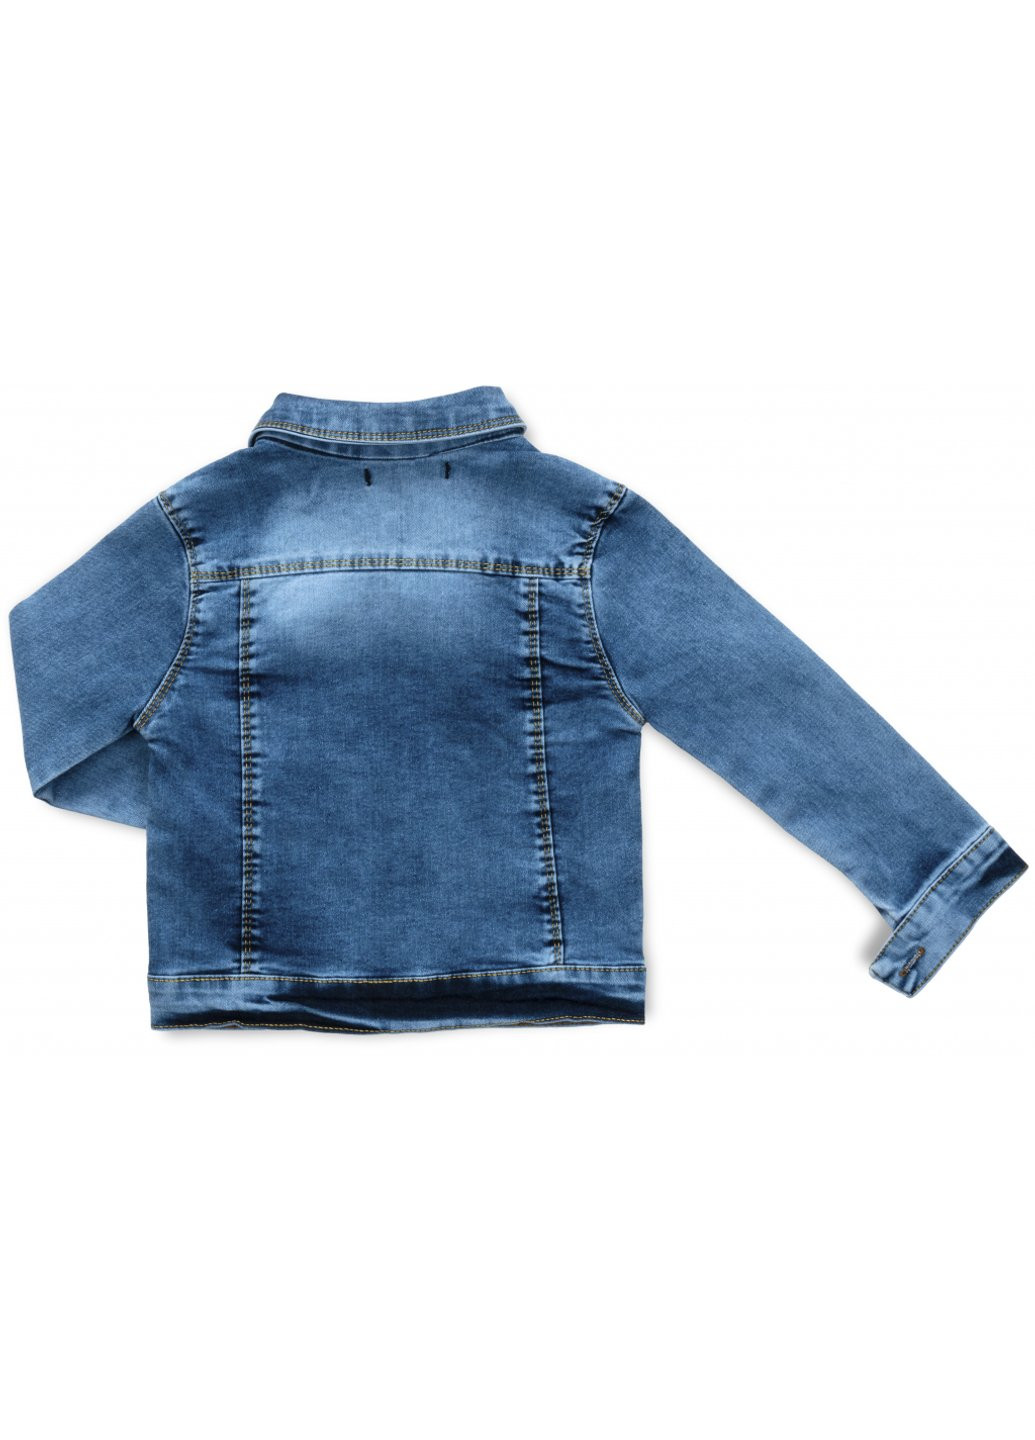 Голубая демисезонная куртка джинсовая (99112-110-blue) Sercino